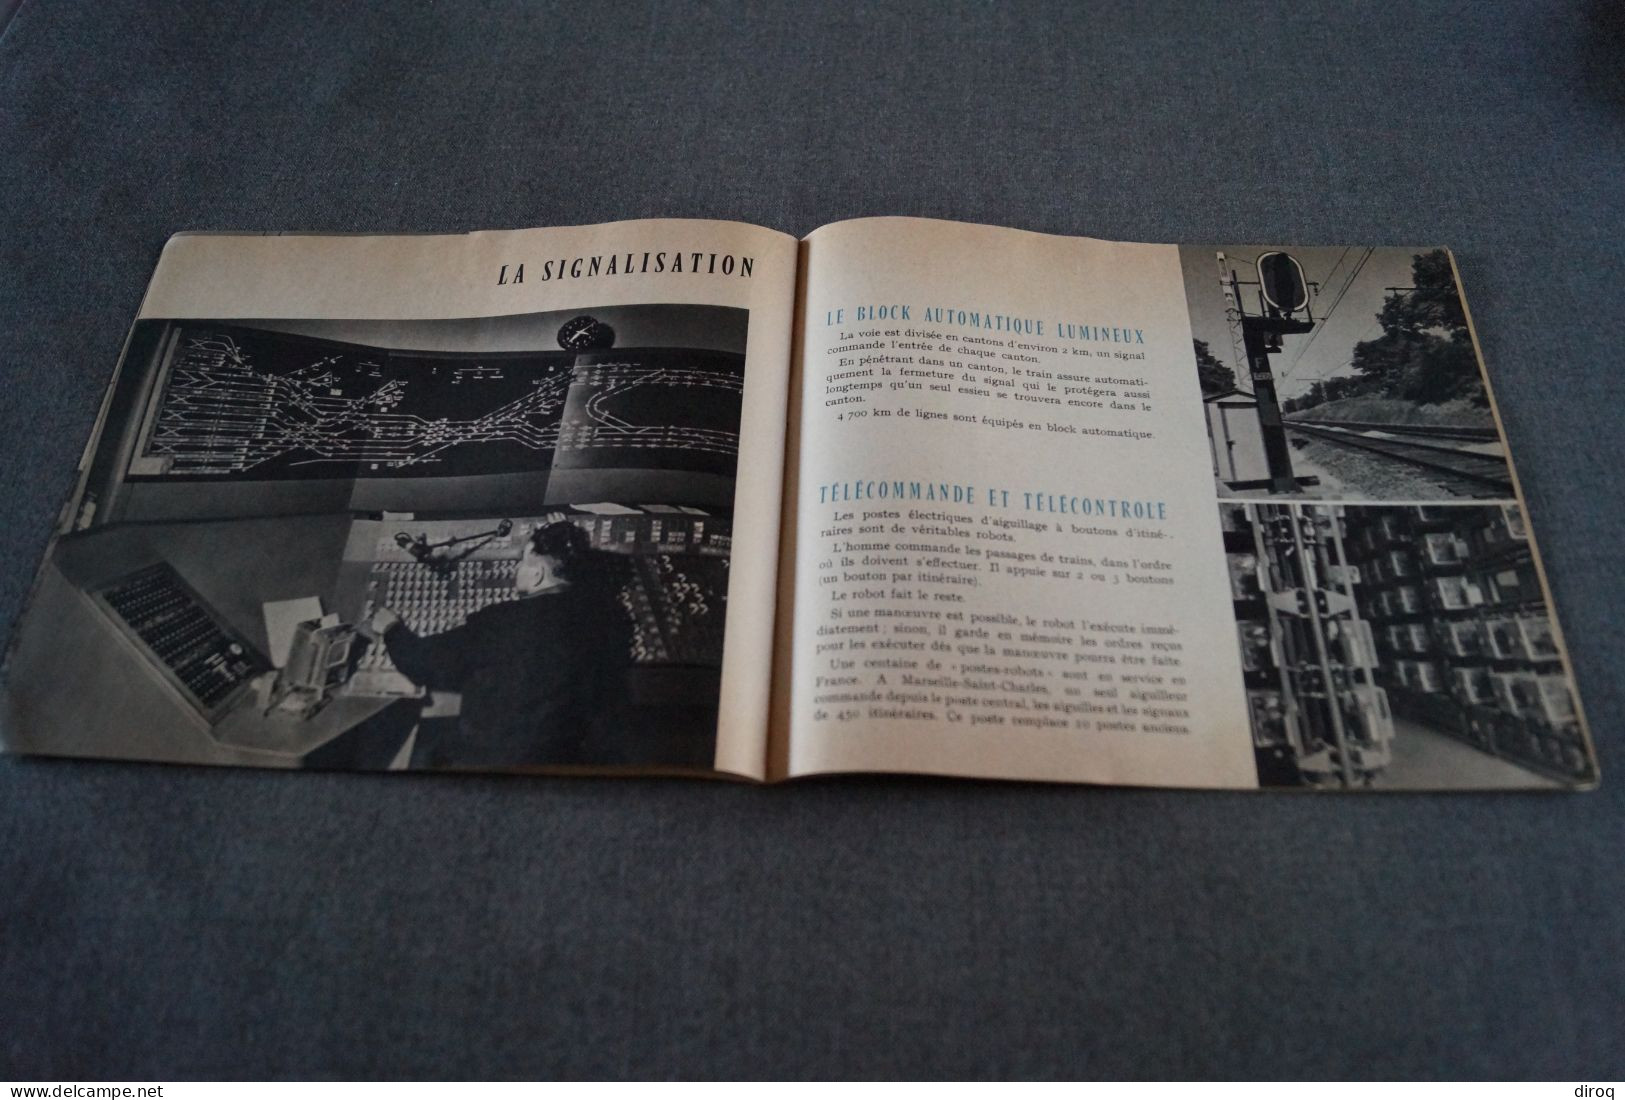 Expo 1958, Bruxelles,publicitaire,LChemin De Fer Français,24 Pages,21 Cm. Sur 18 Cm. - Publicités